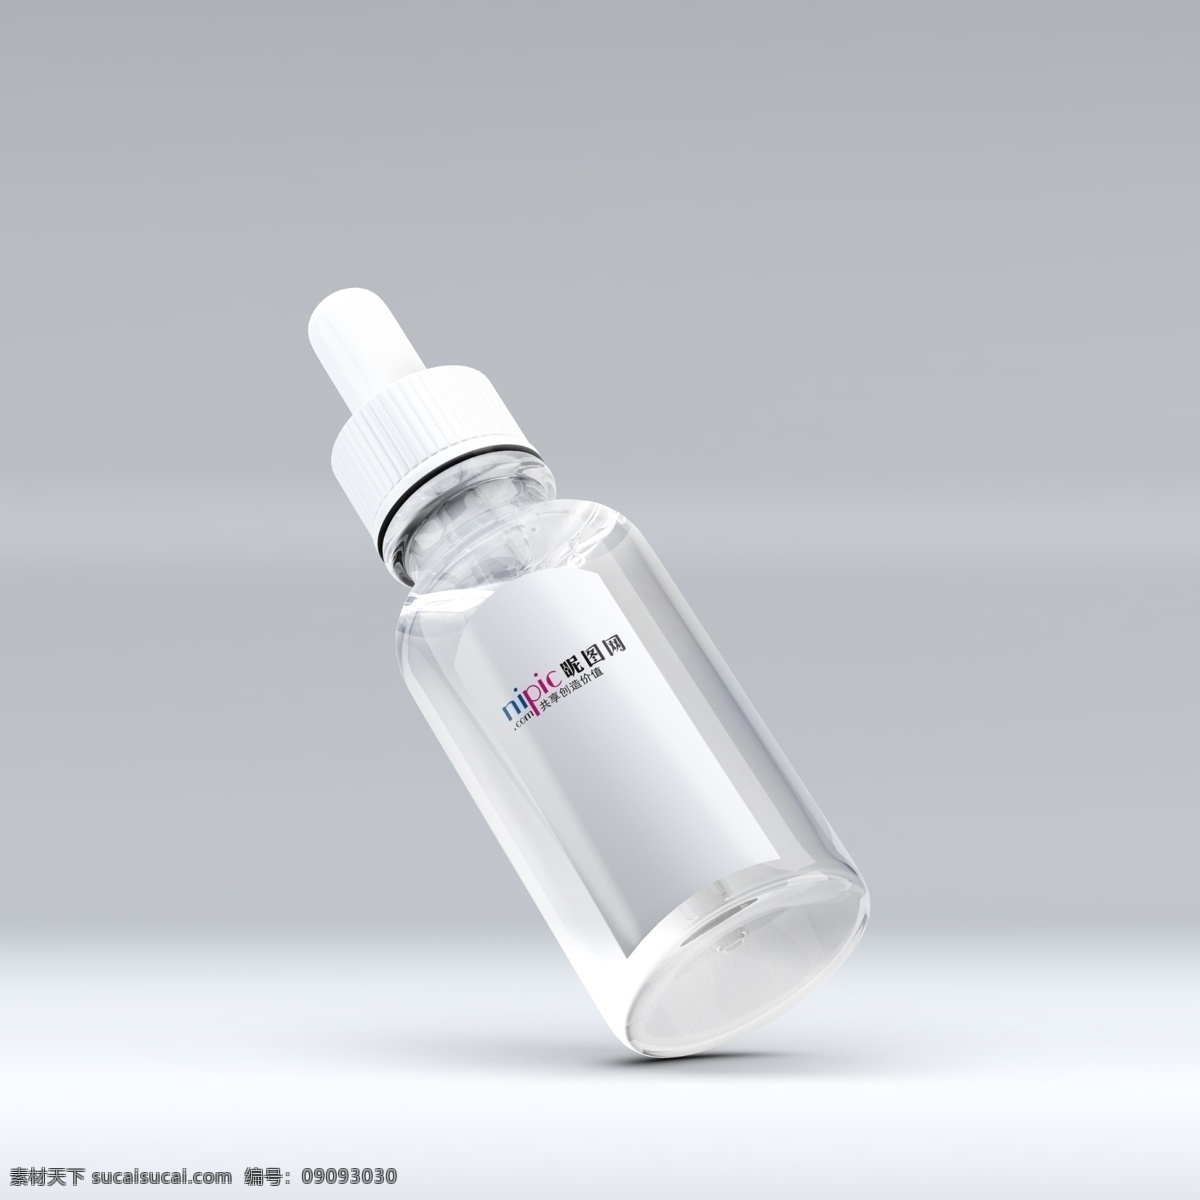 瓶子样机 抑菌 洗手液 凝胶 透明 瓶子 样机 效果图 包装样机 包装设计